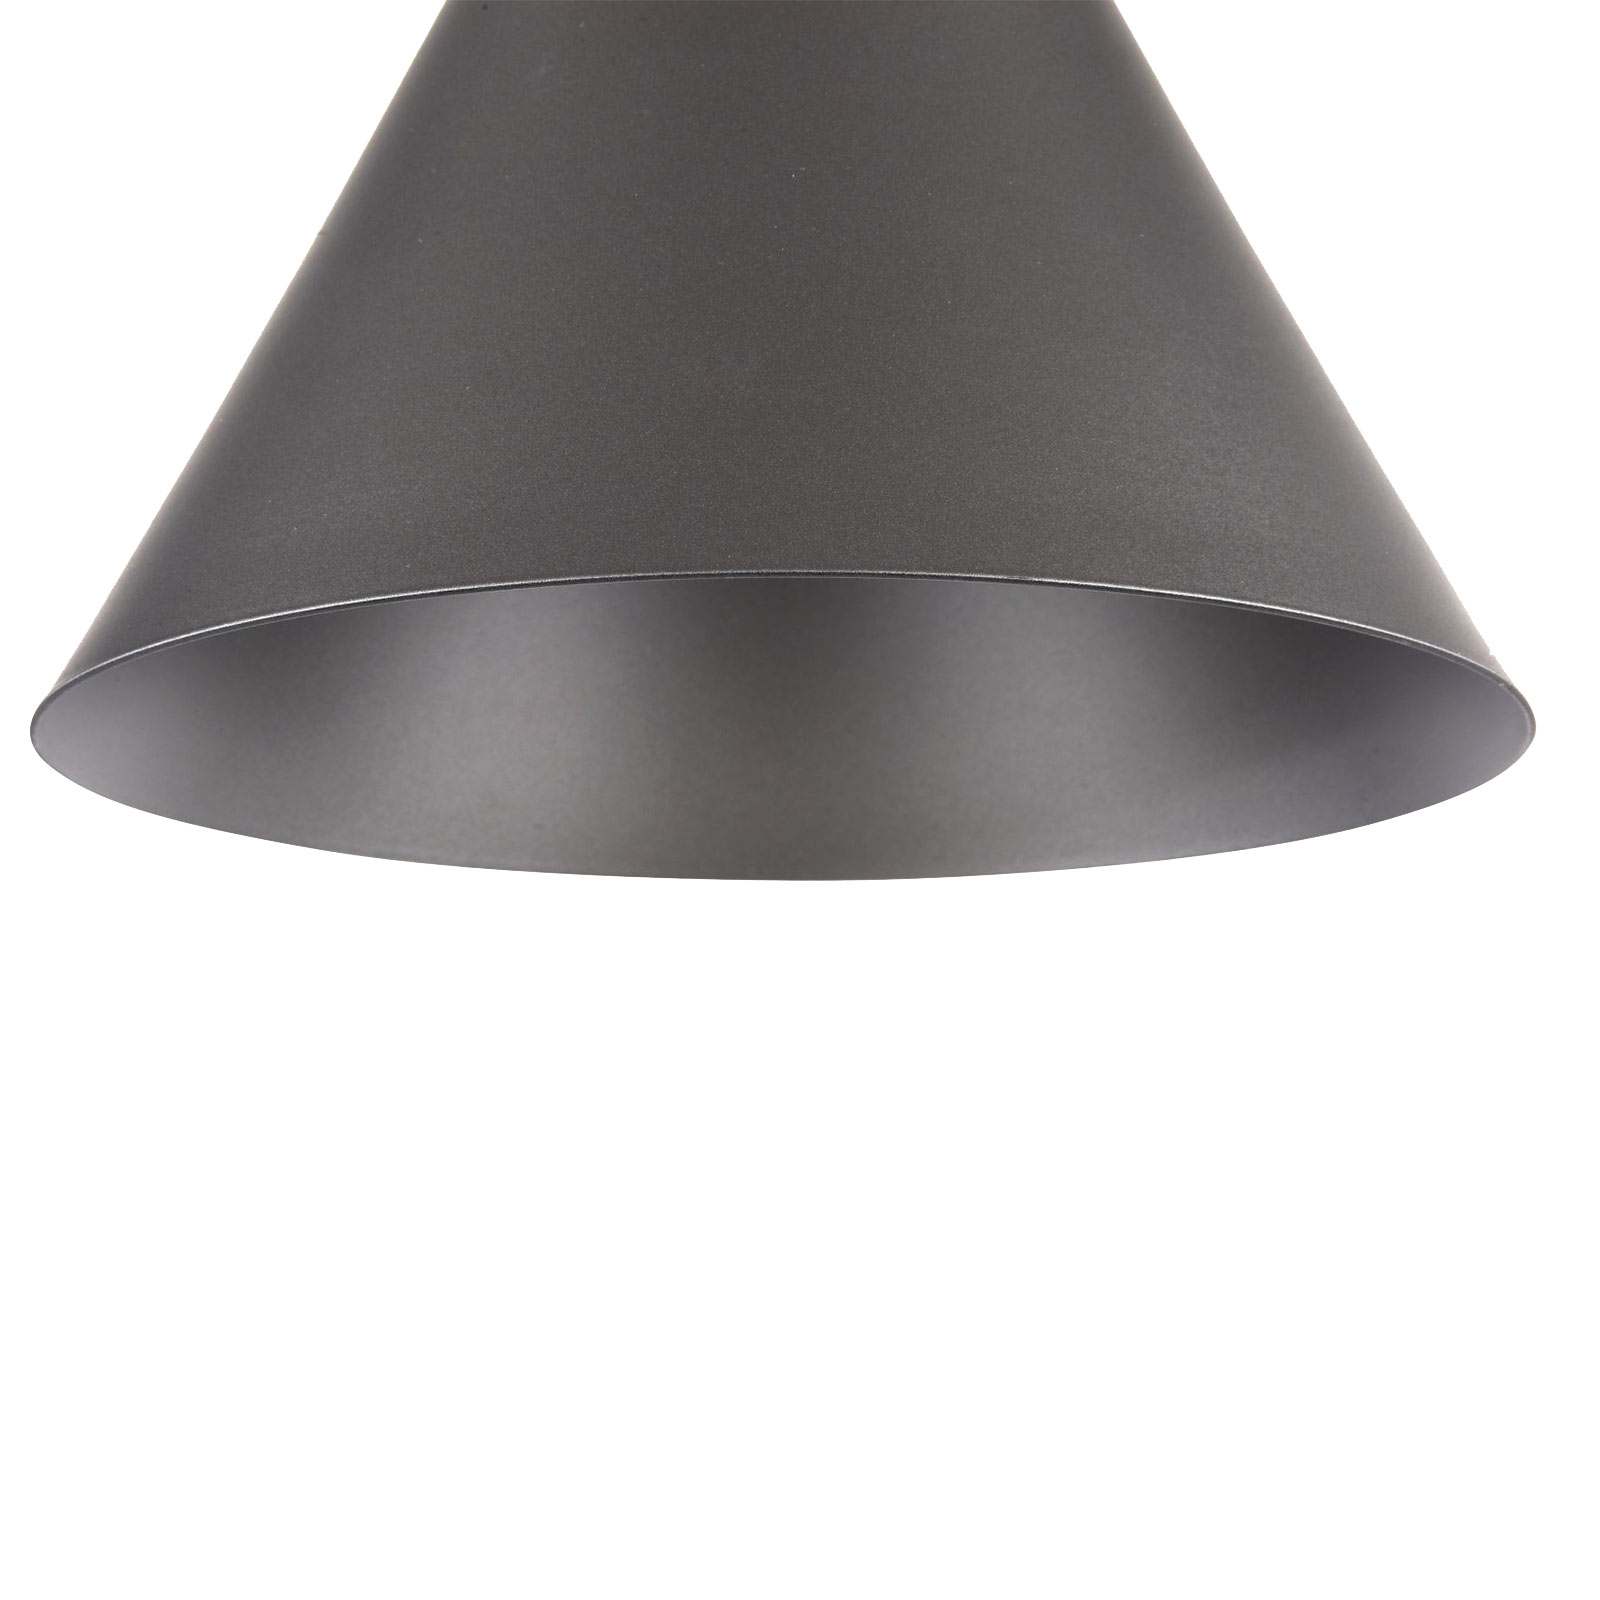 Bicones hængelampe i sort, Ø 22 cm